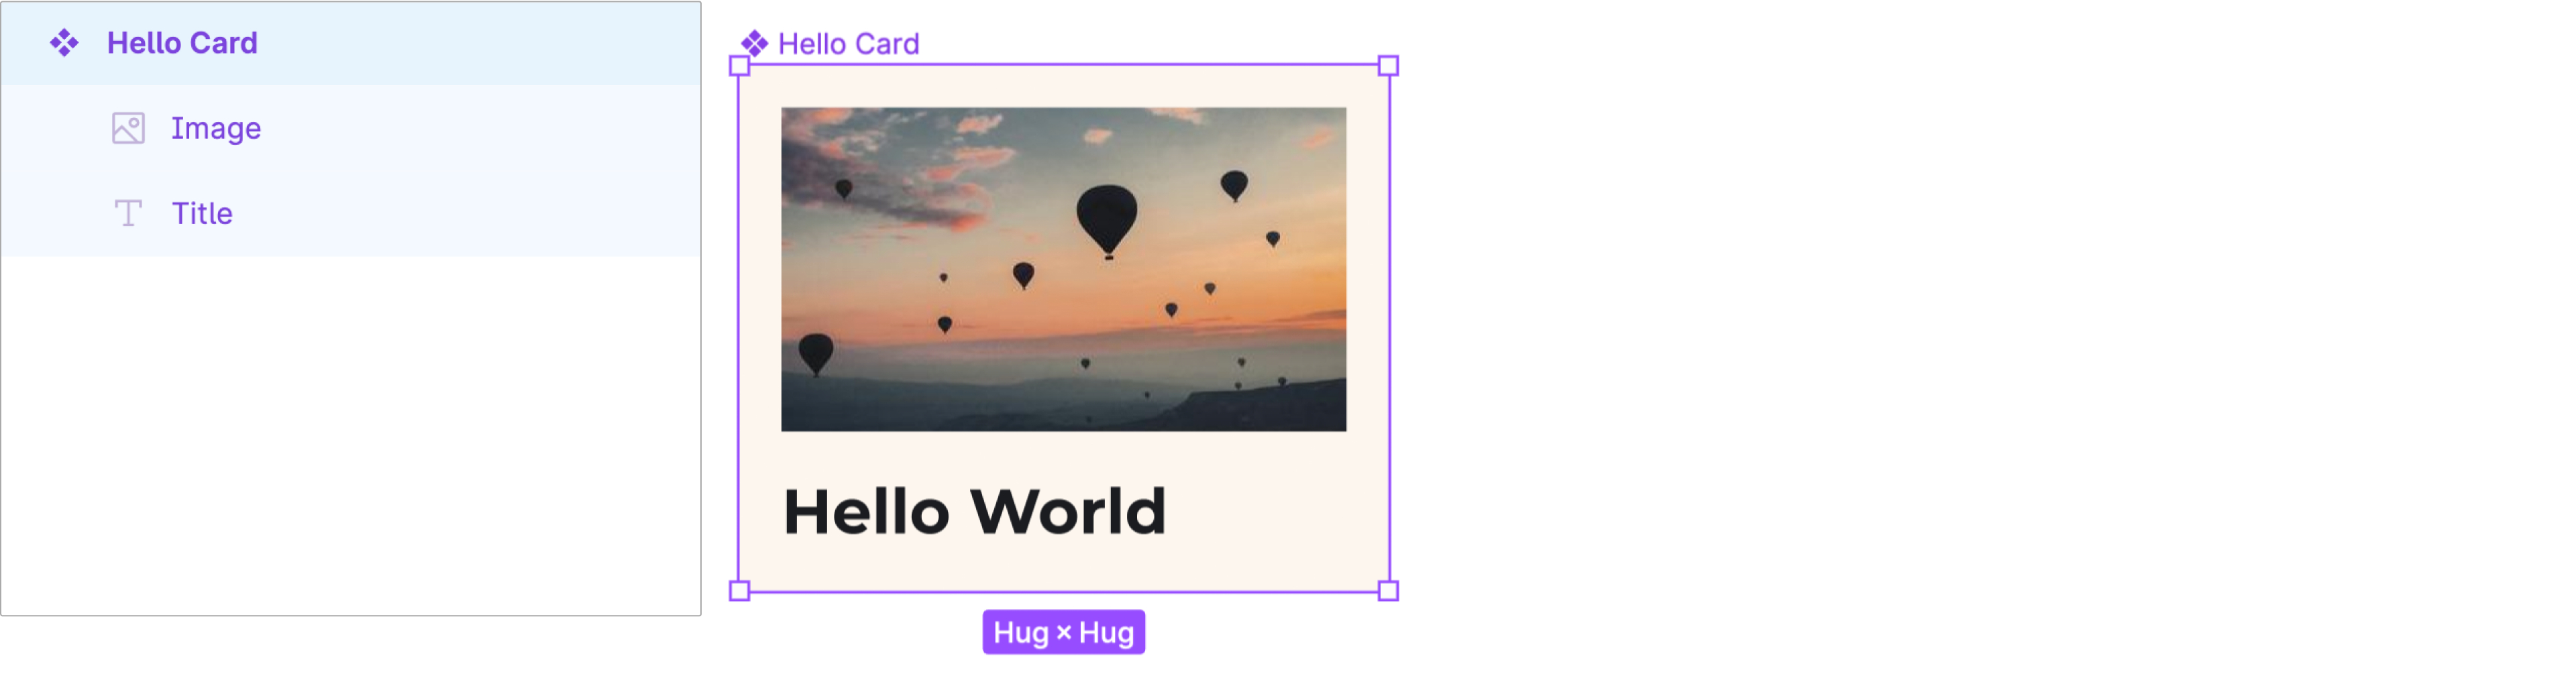 Componente de la tarjeta Hello World con capas de Image y Title